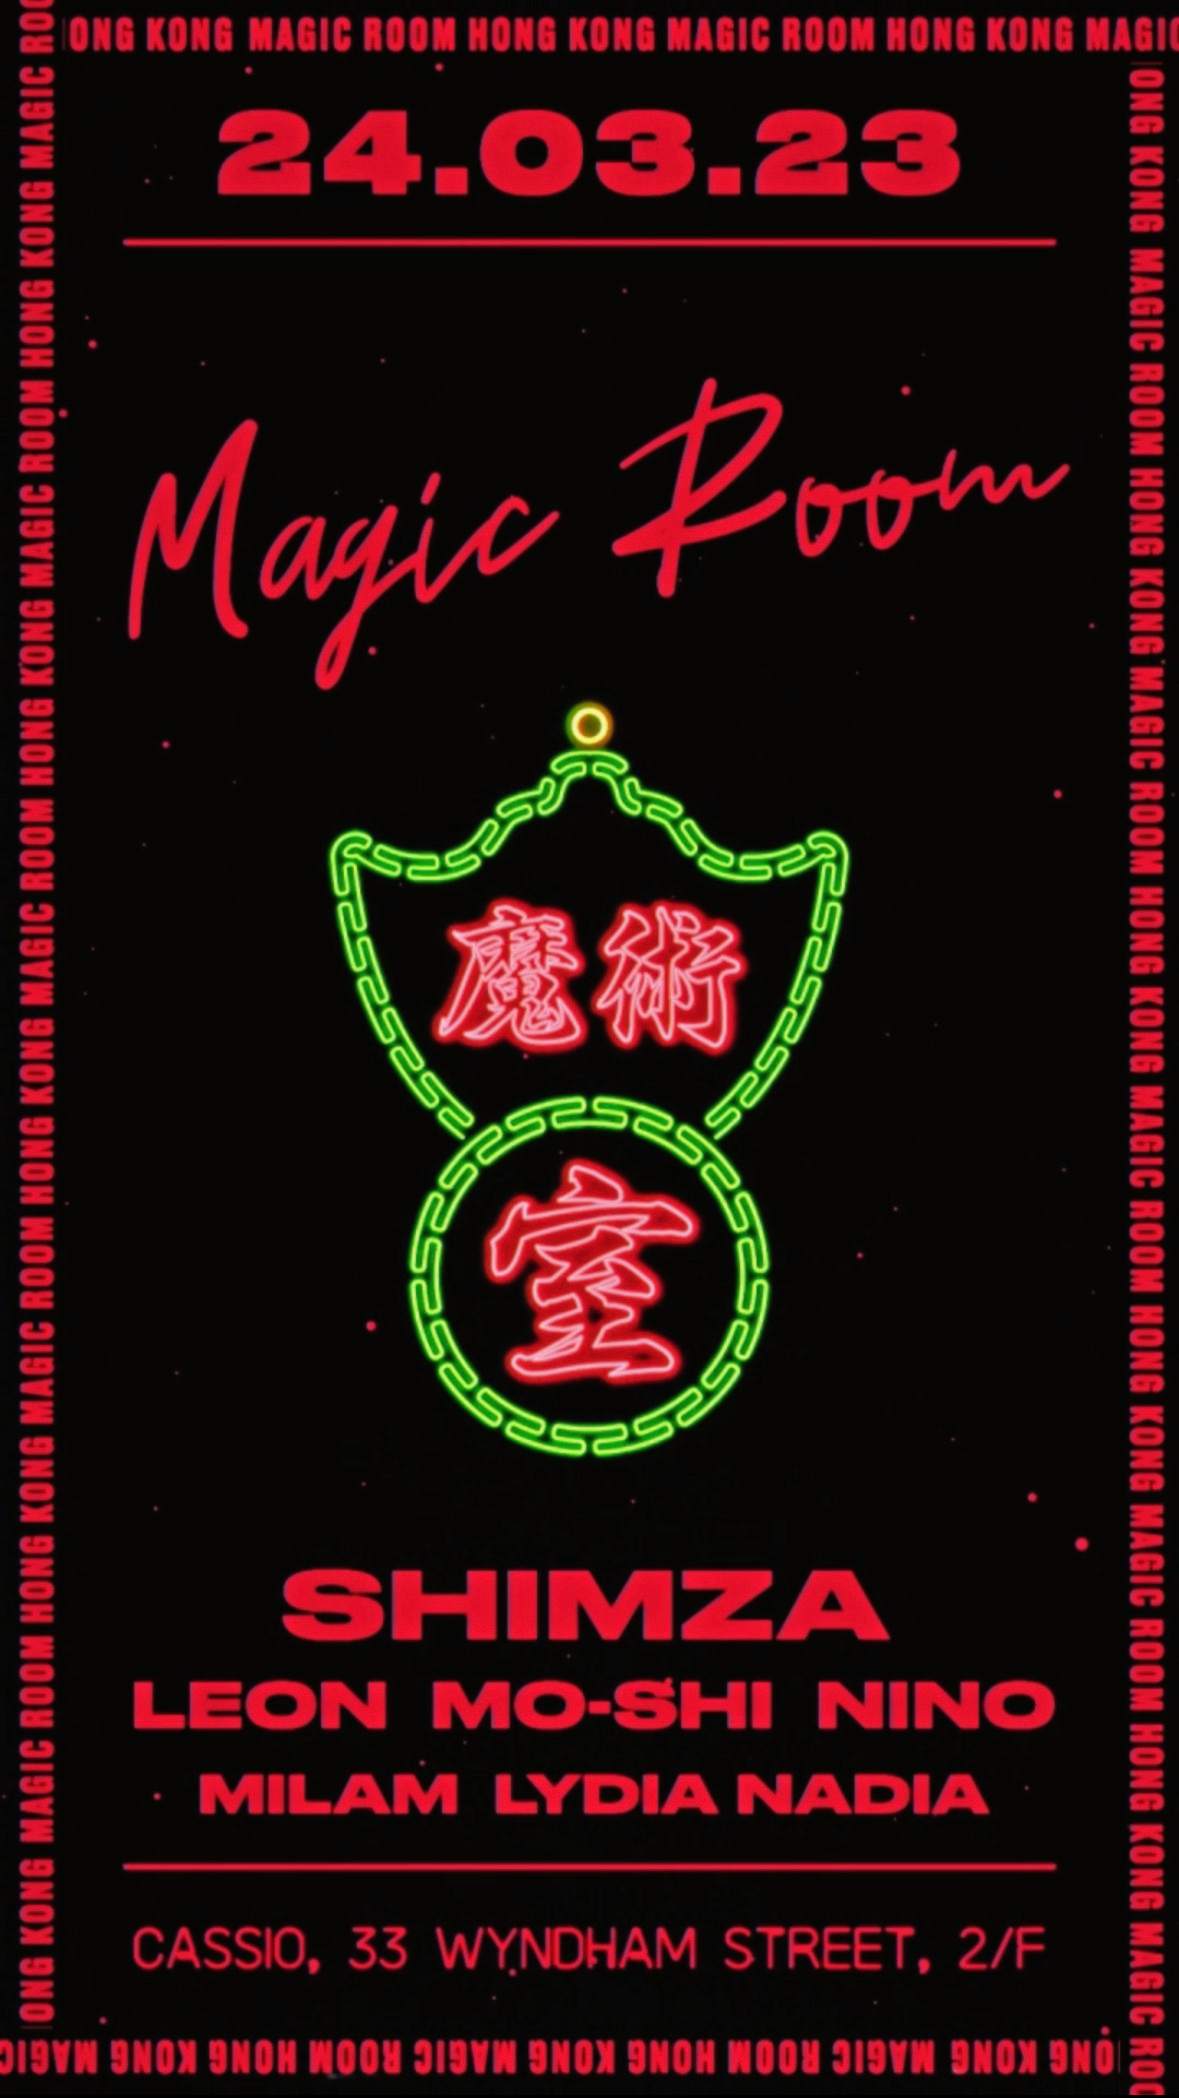 Magic Room - Hong Kong - Shimza - フライヤー表